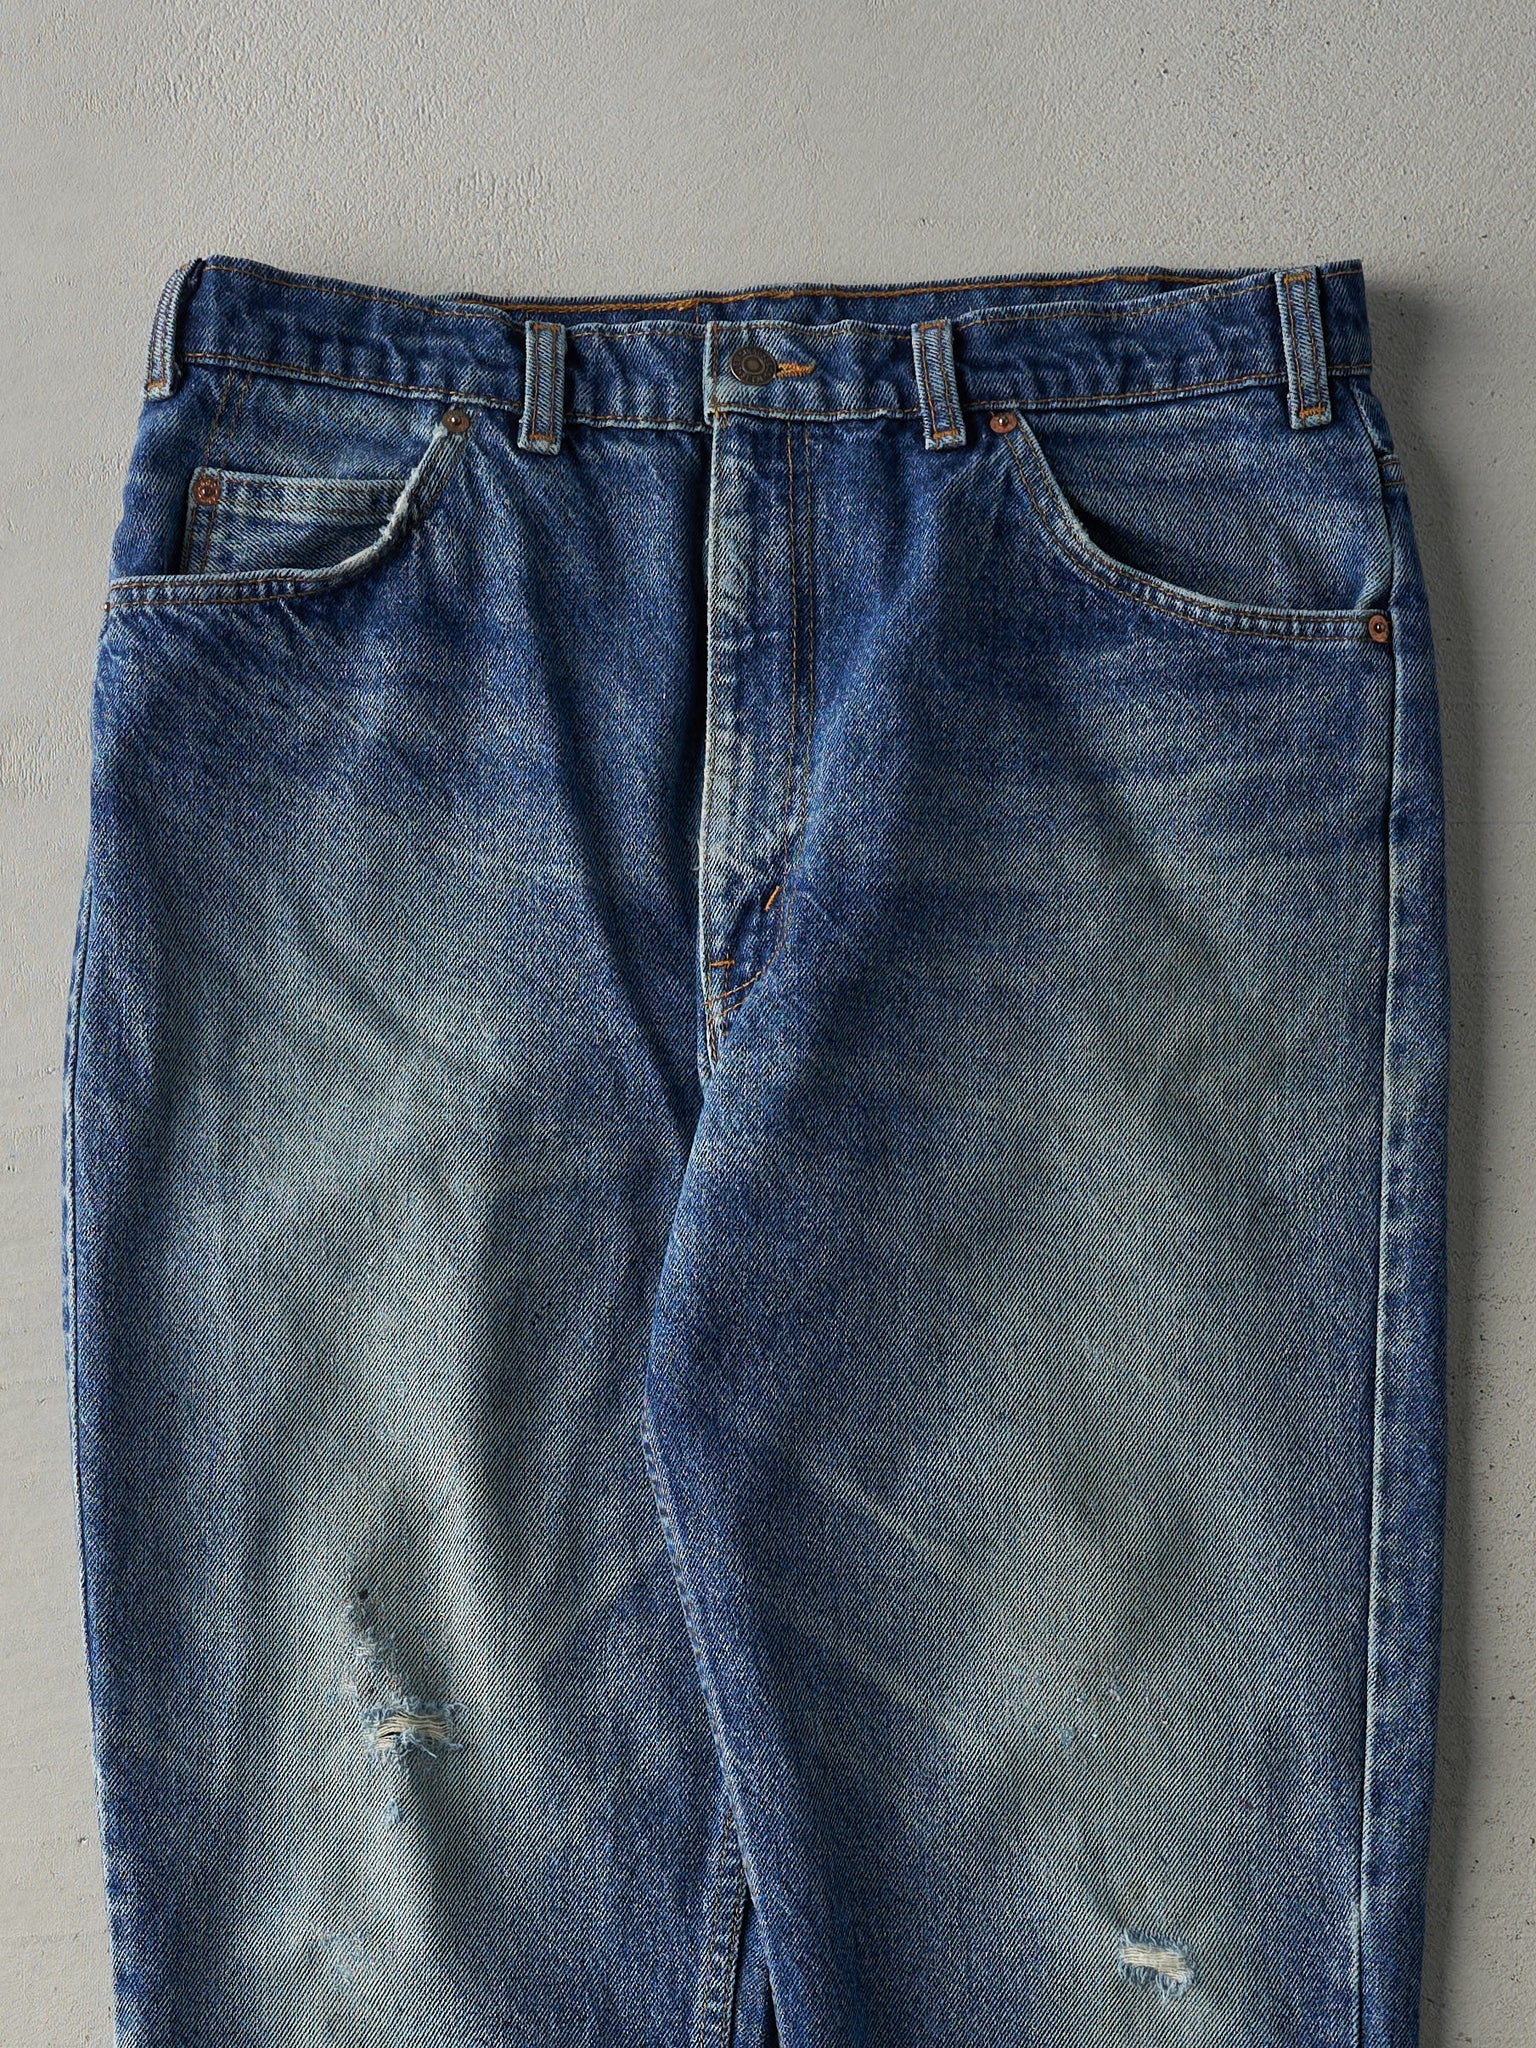 Vintage 80s Mid Wash Levi's 619 Orange Tab Jeans (34x28)